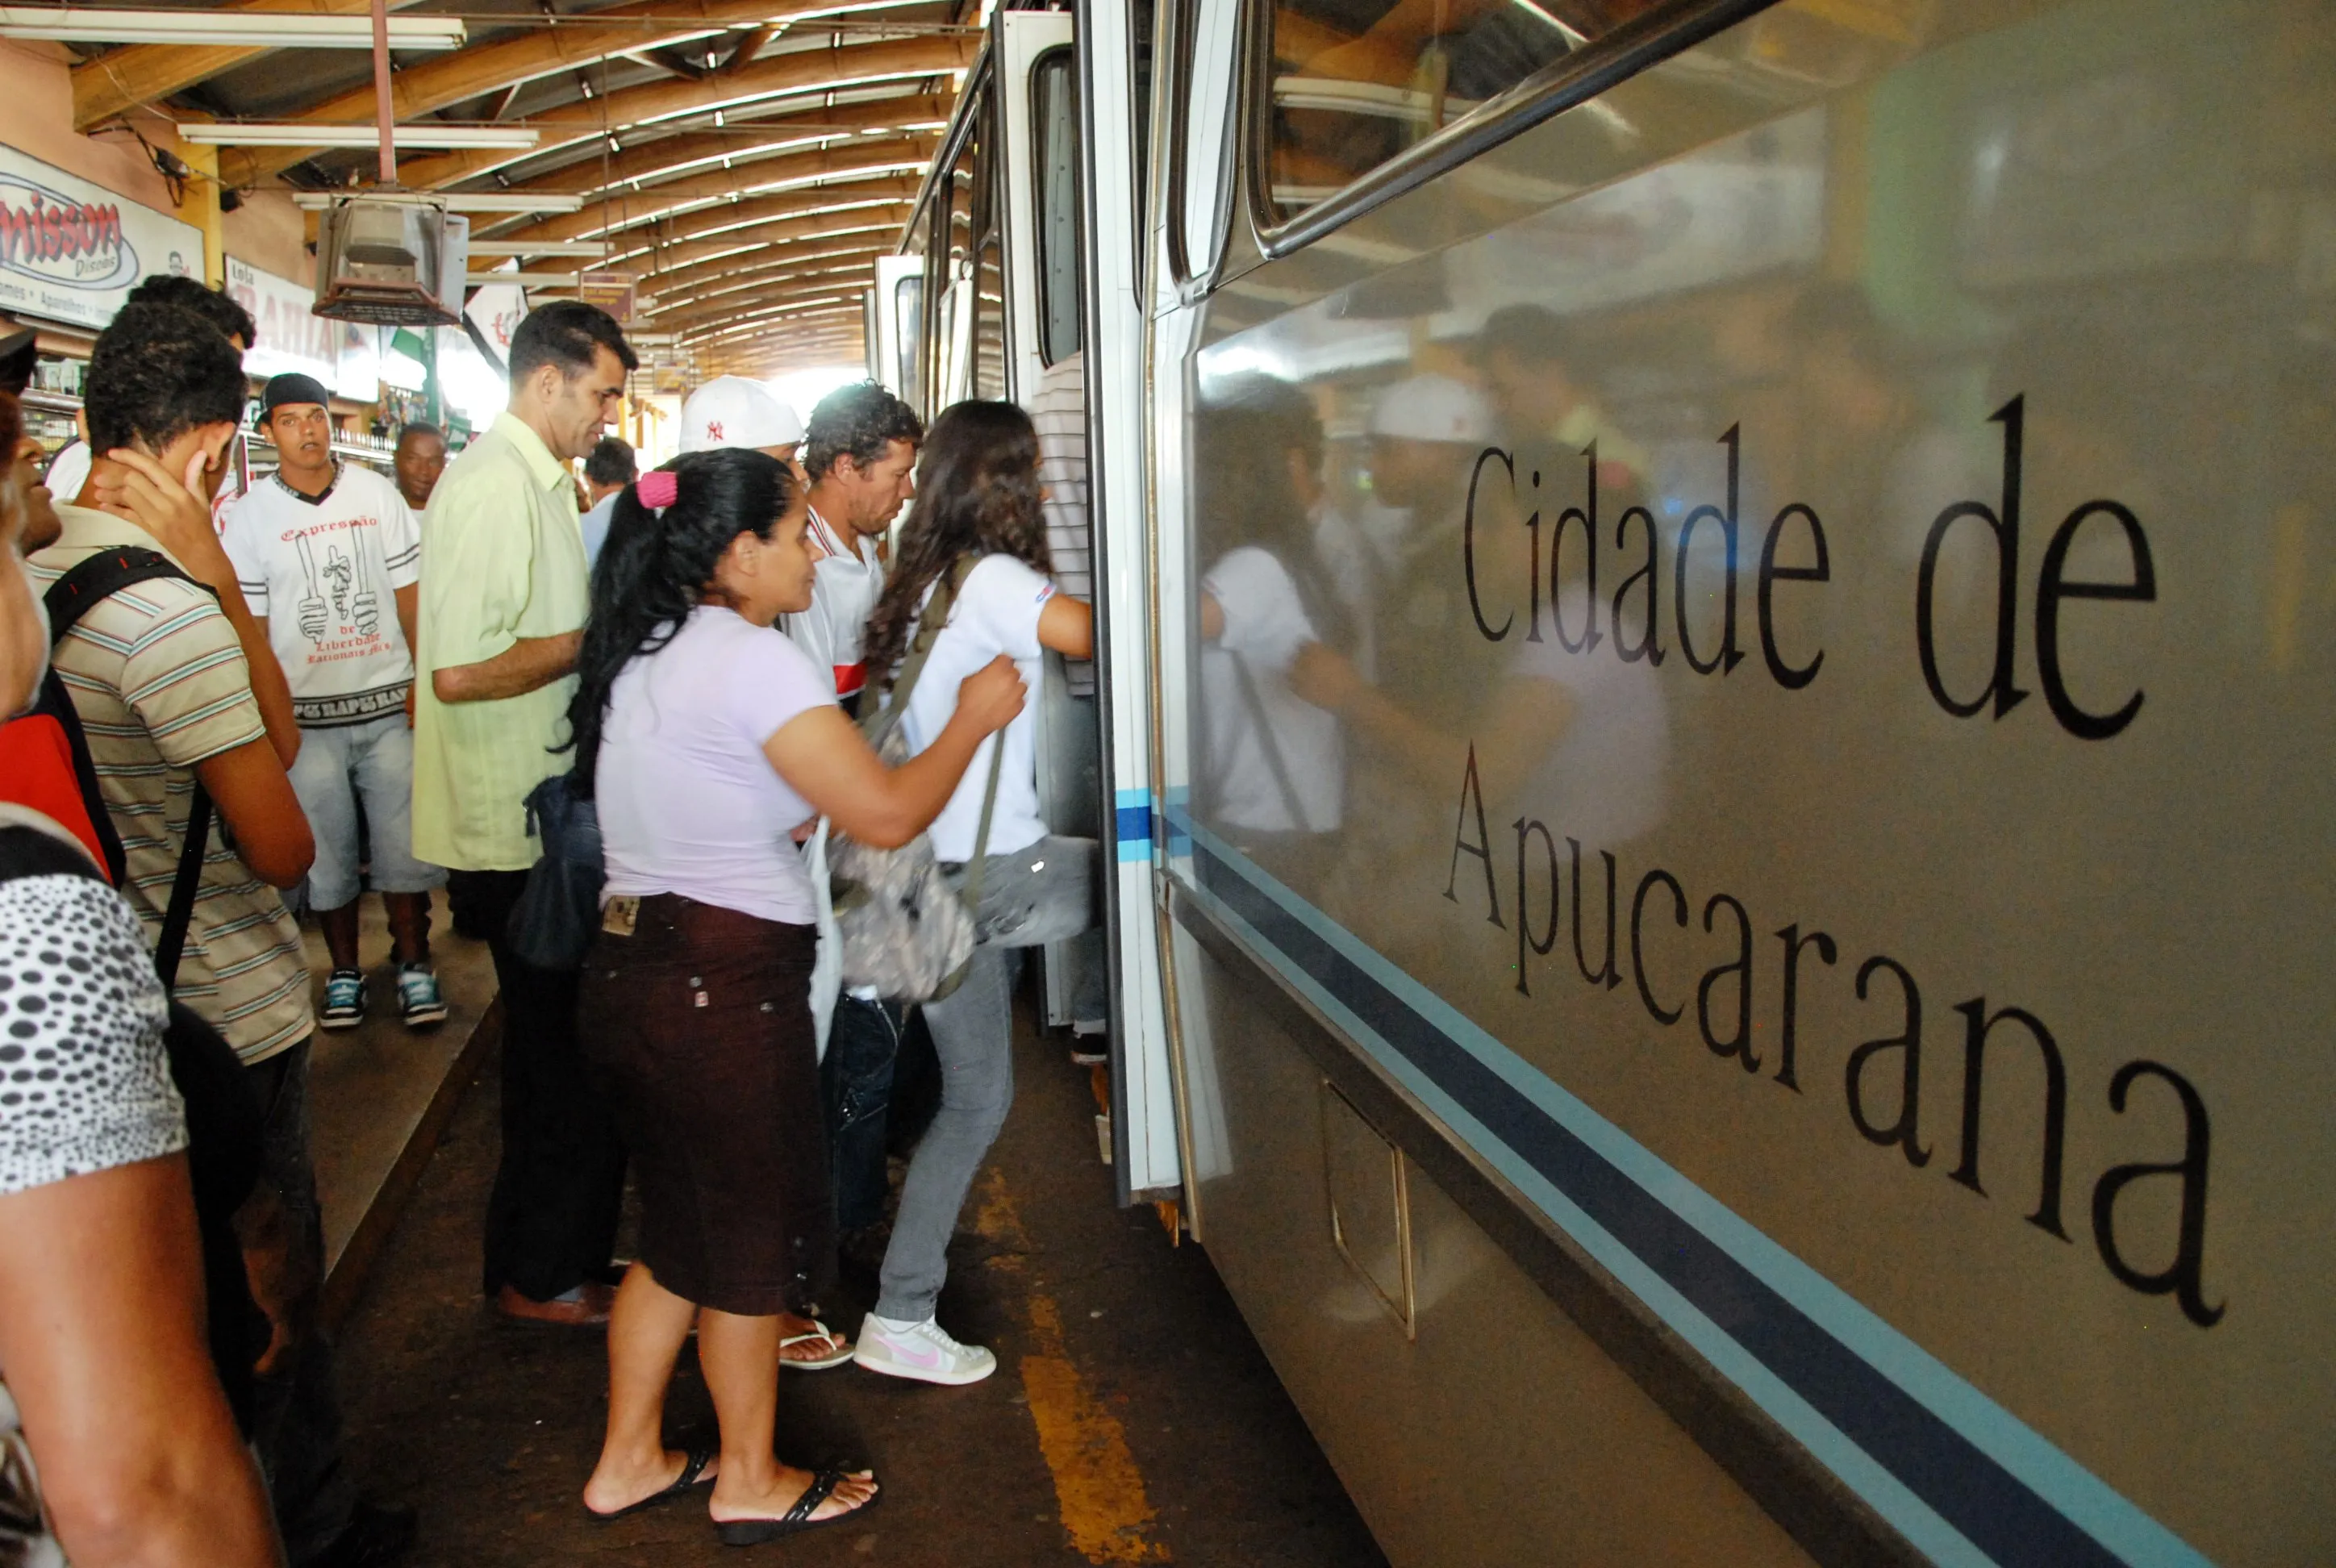 Transporte coletivo vai parar na Justiça em Apucarana